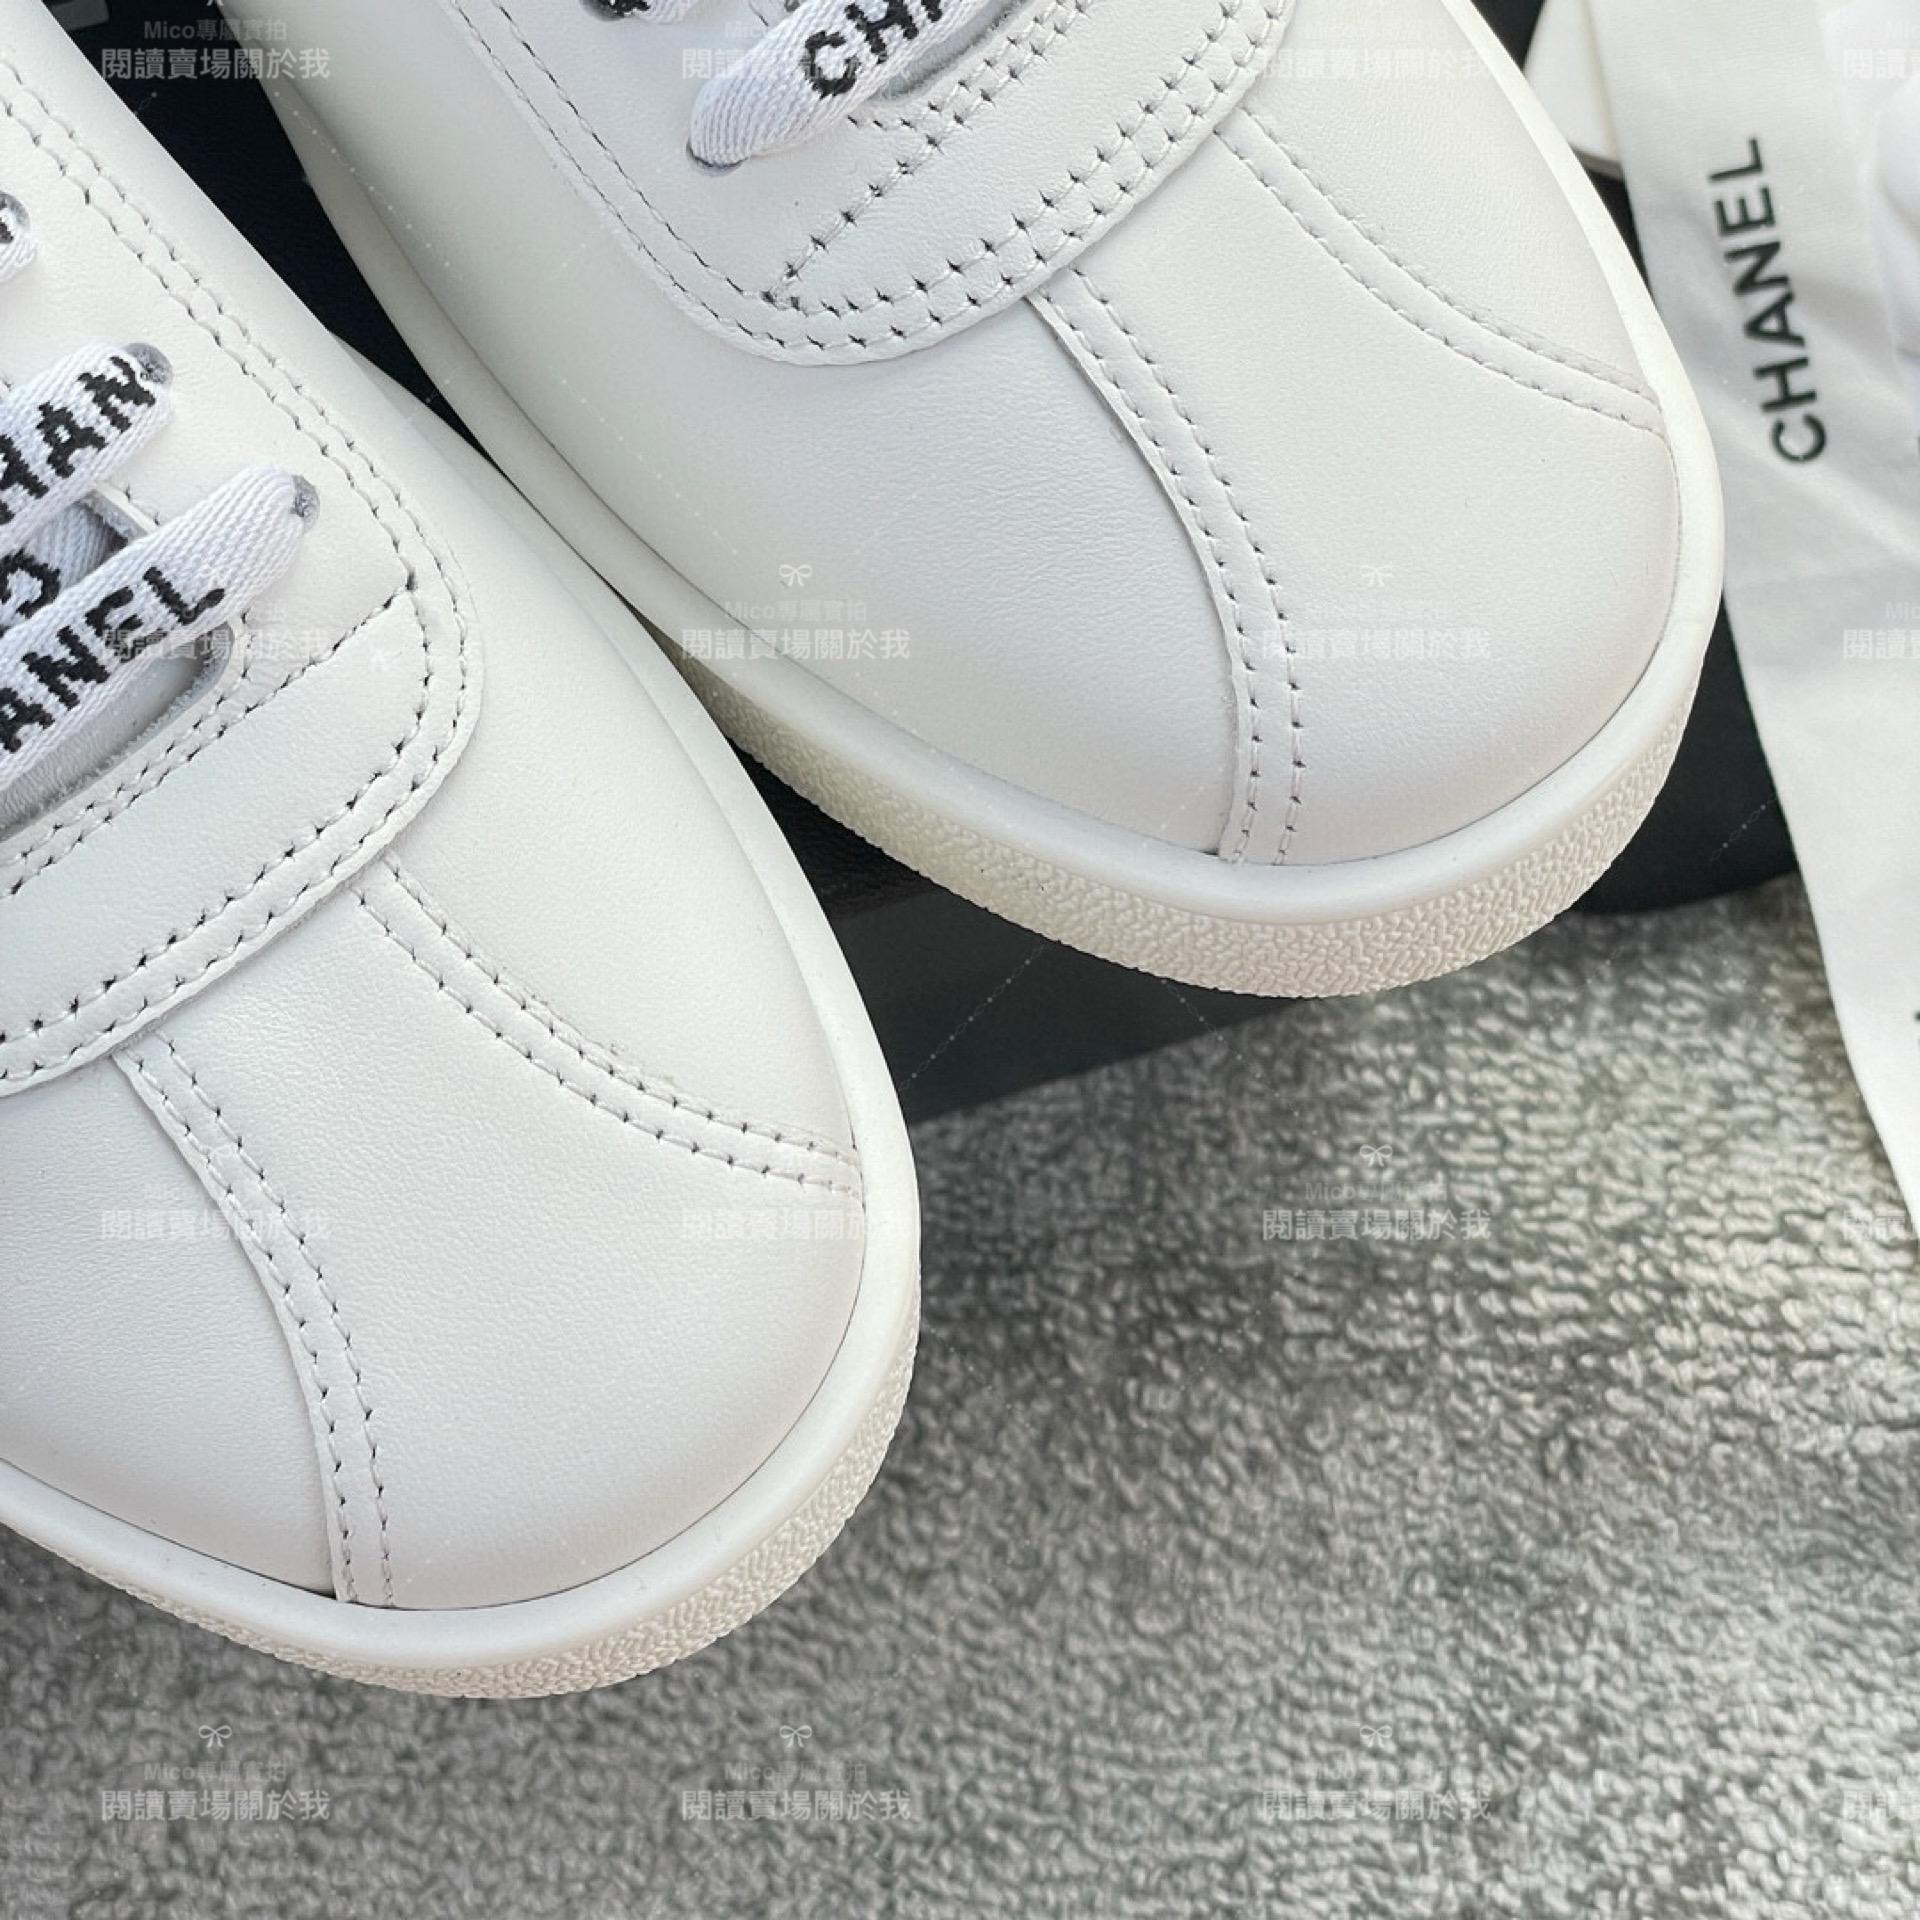 經典中的經典 CHANEL Sneaker小白鞋 字母鞋帶小白鞋 35-40